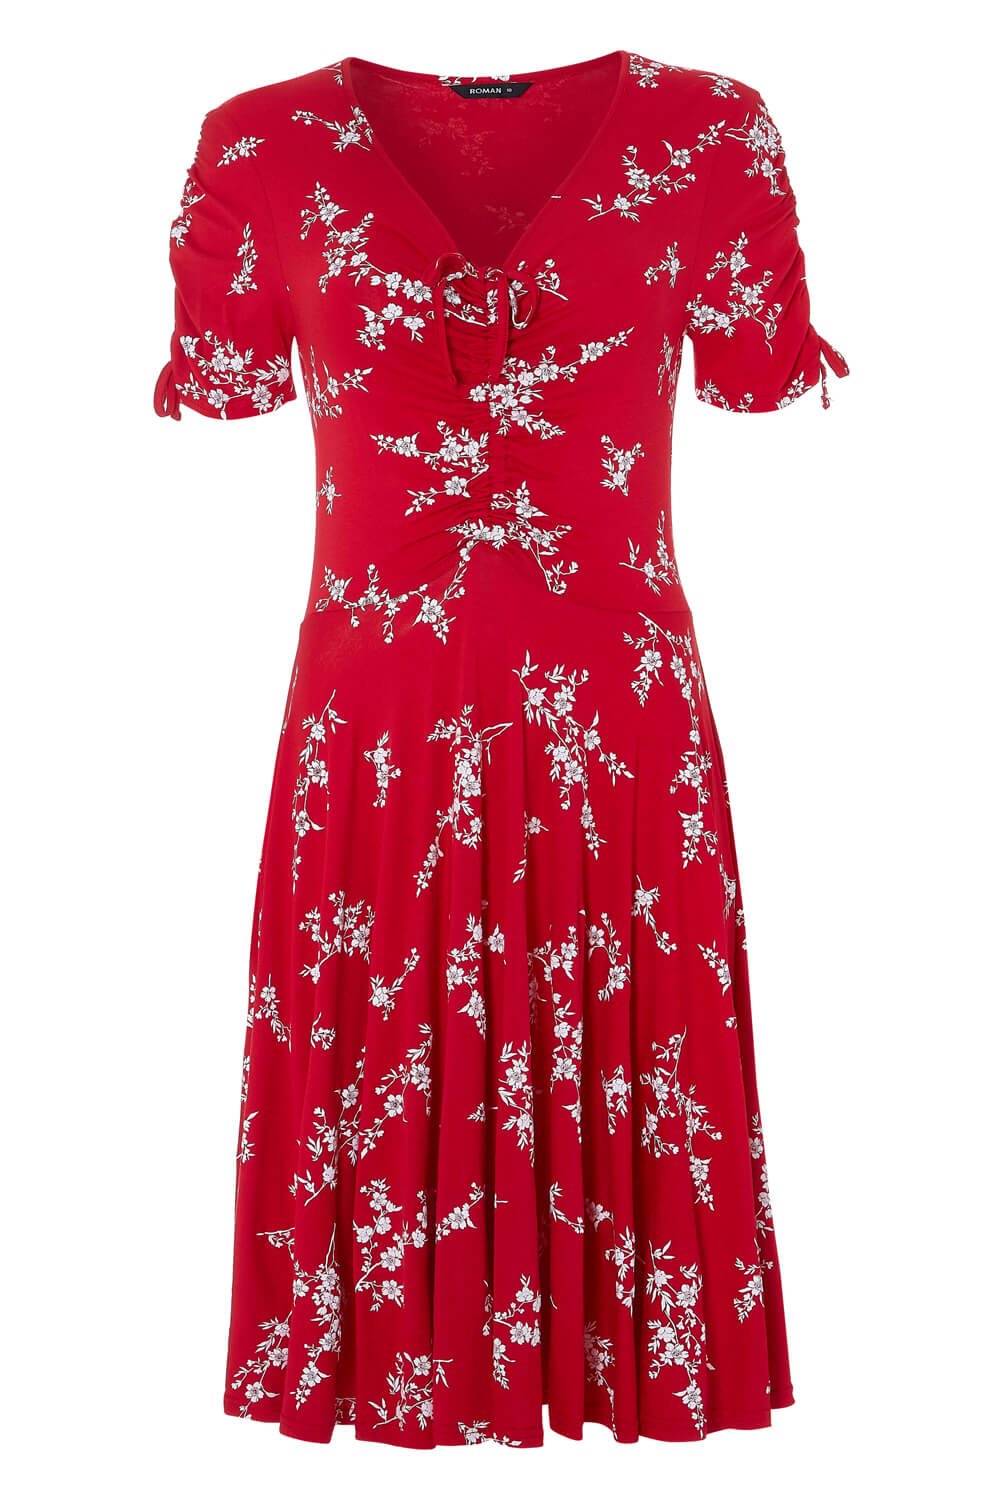 Red Floral V-Neck Short Sleeve Dress, Image 5 of 5